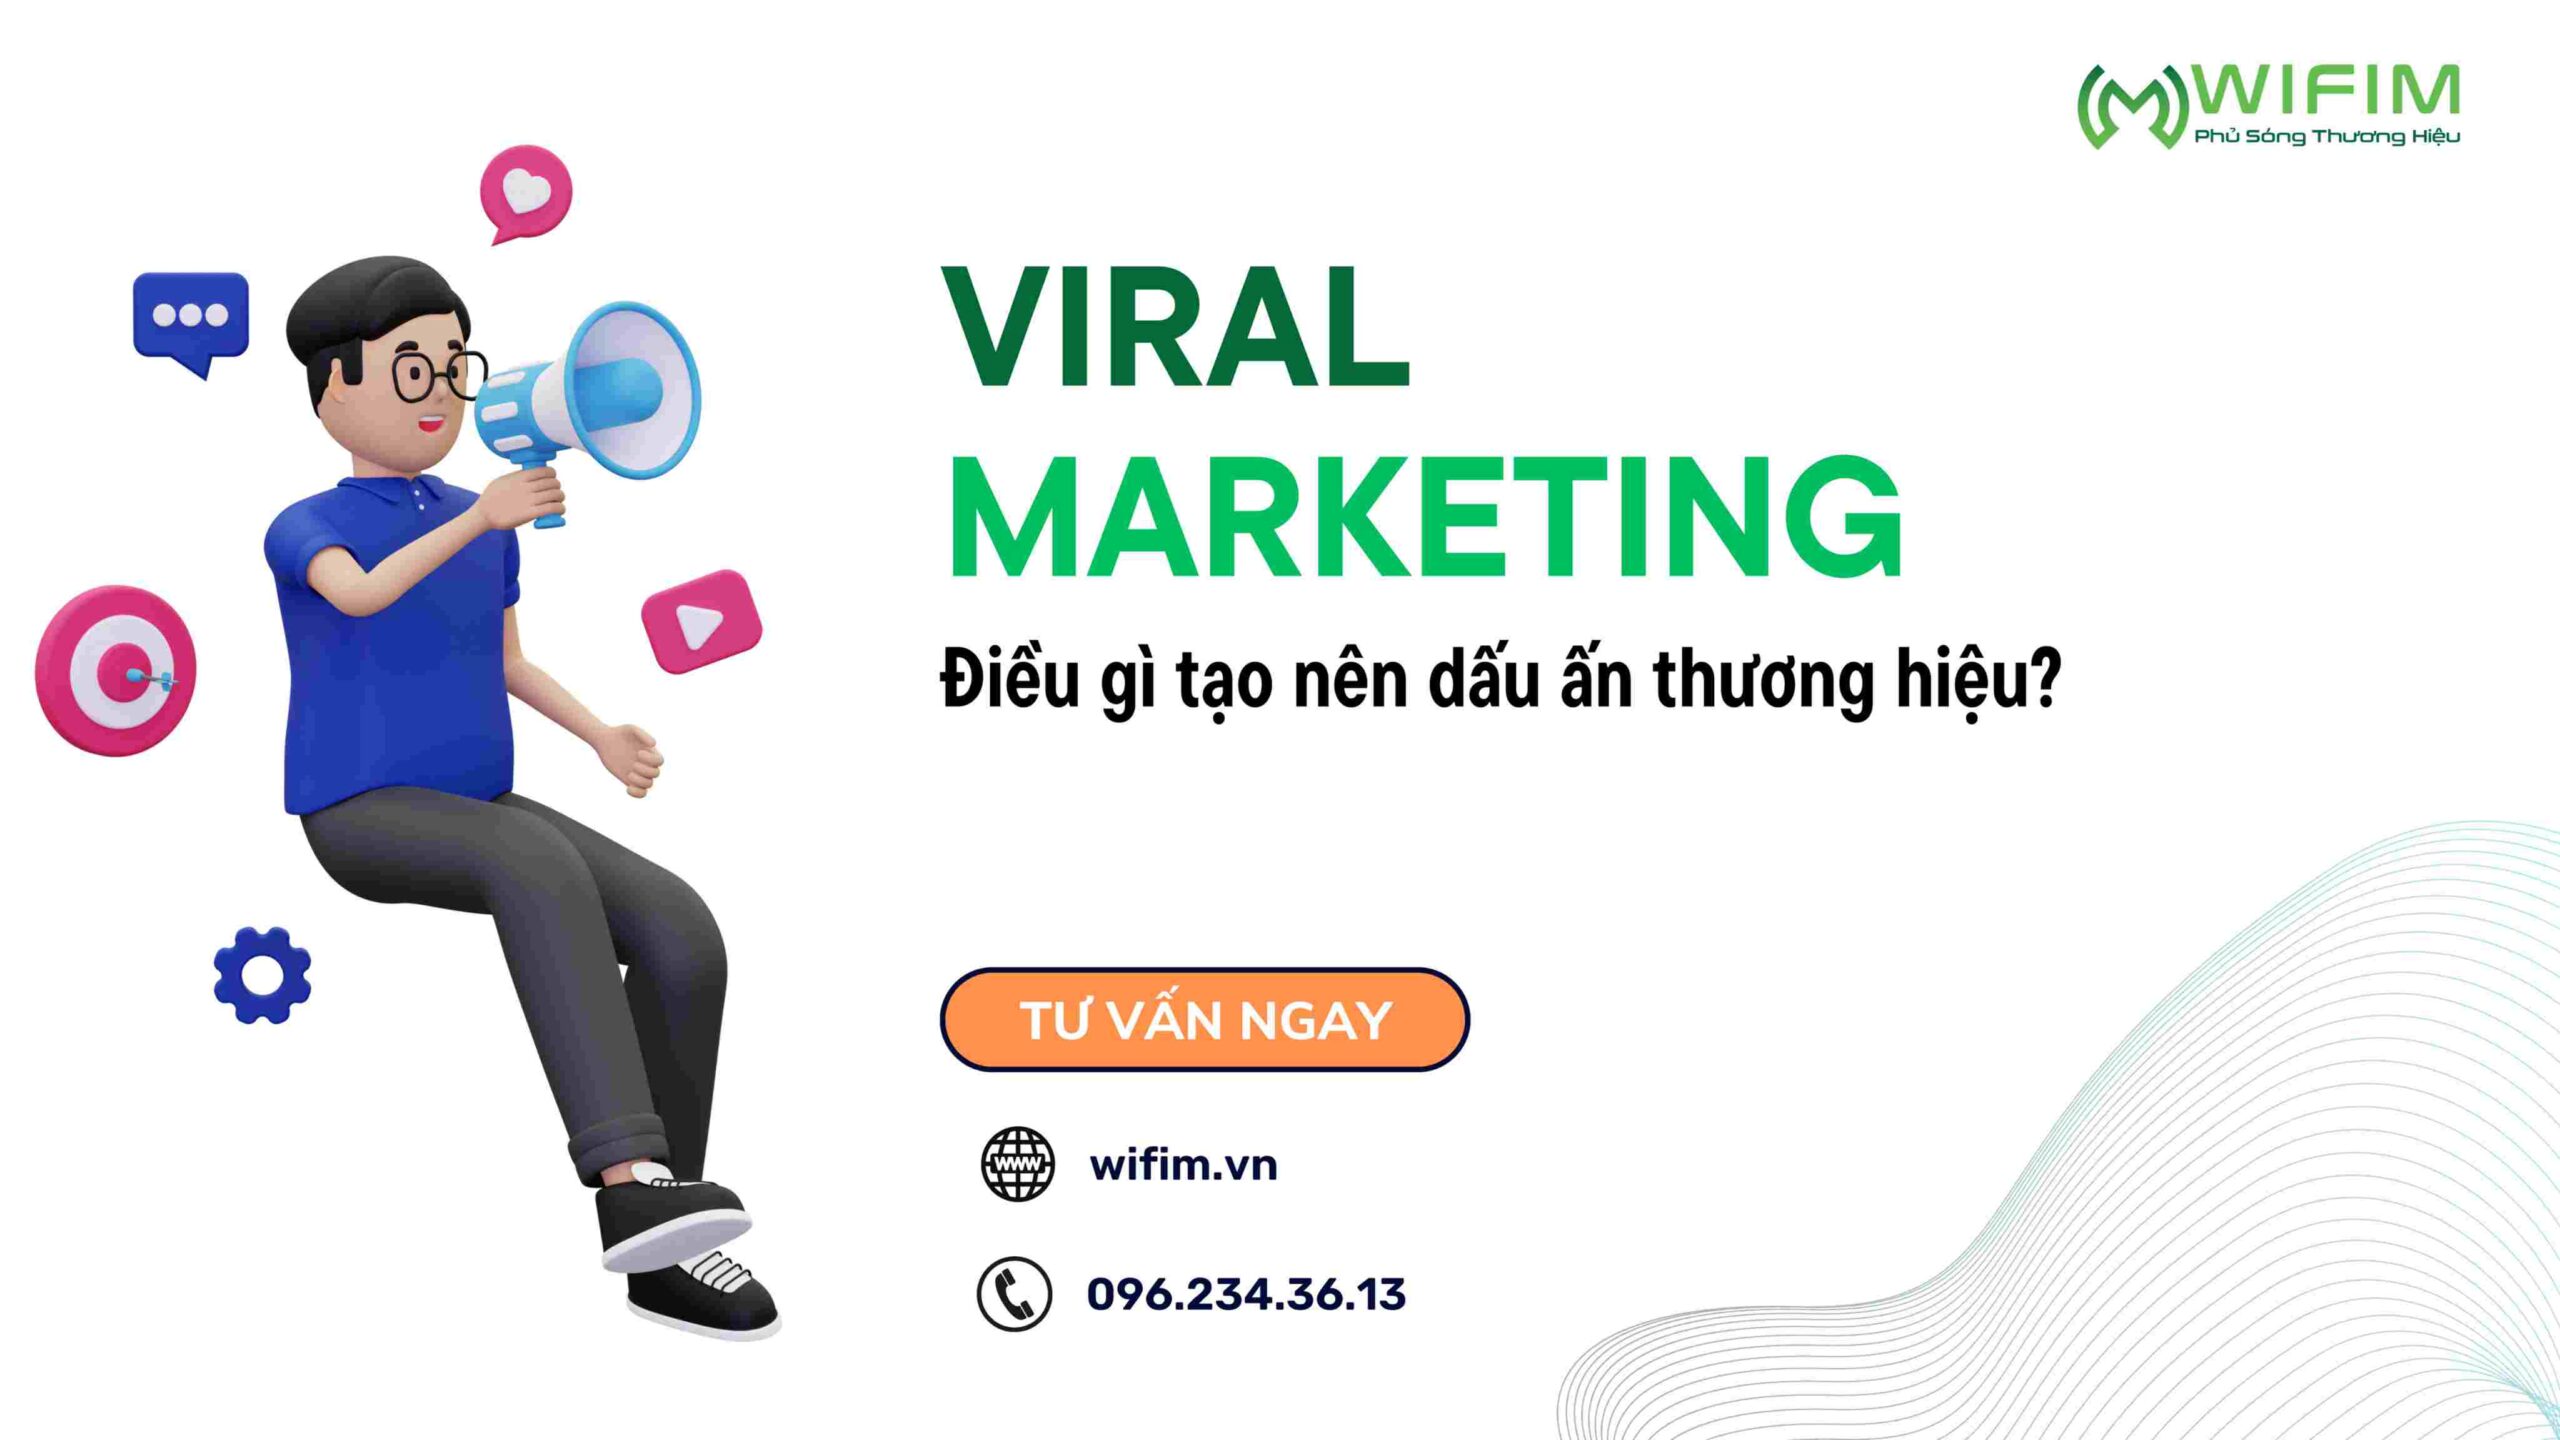 Viral Marketing là gì?